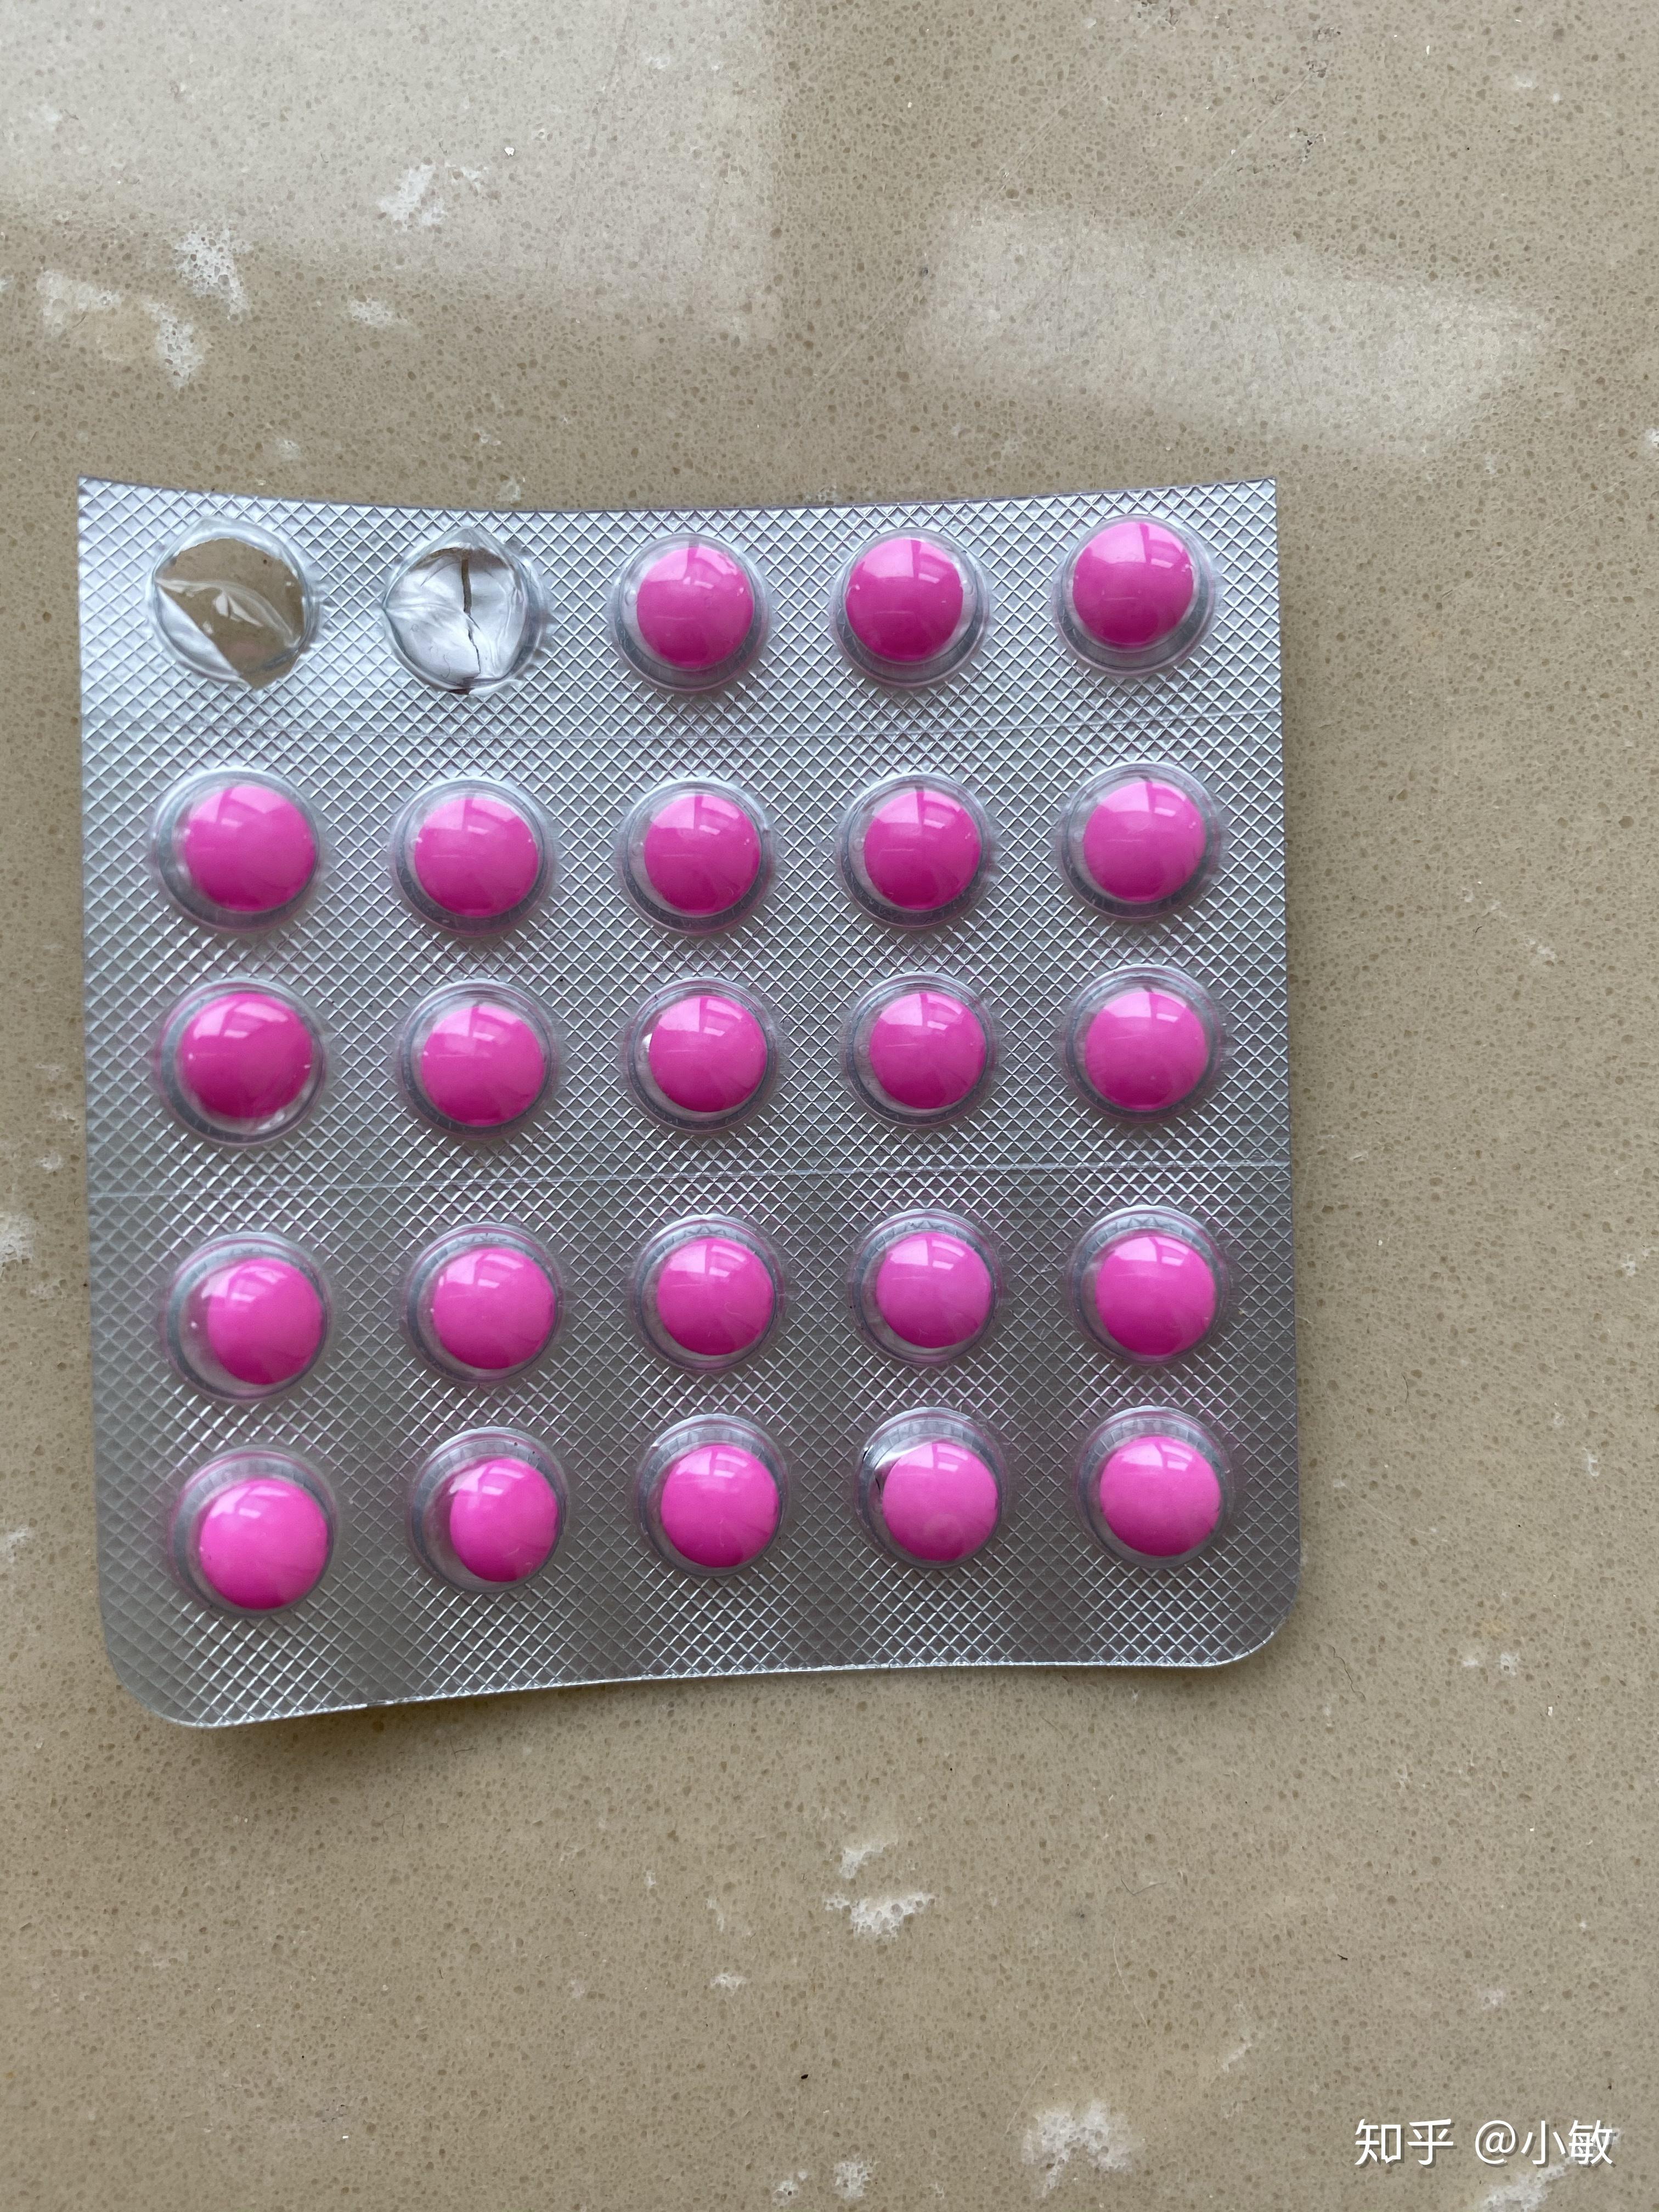 有没有人知道一种粉色的药丸背面写着pvc金属的字样好像是日本的药